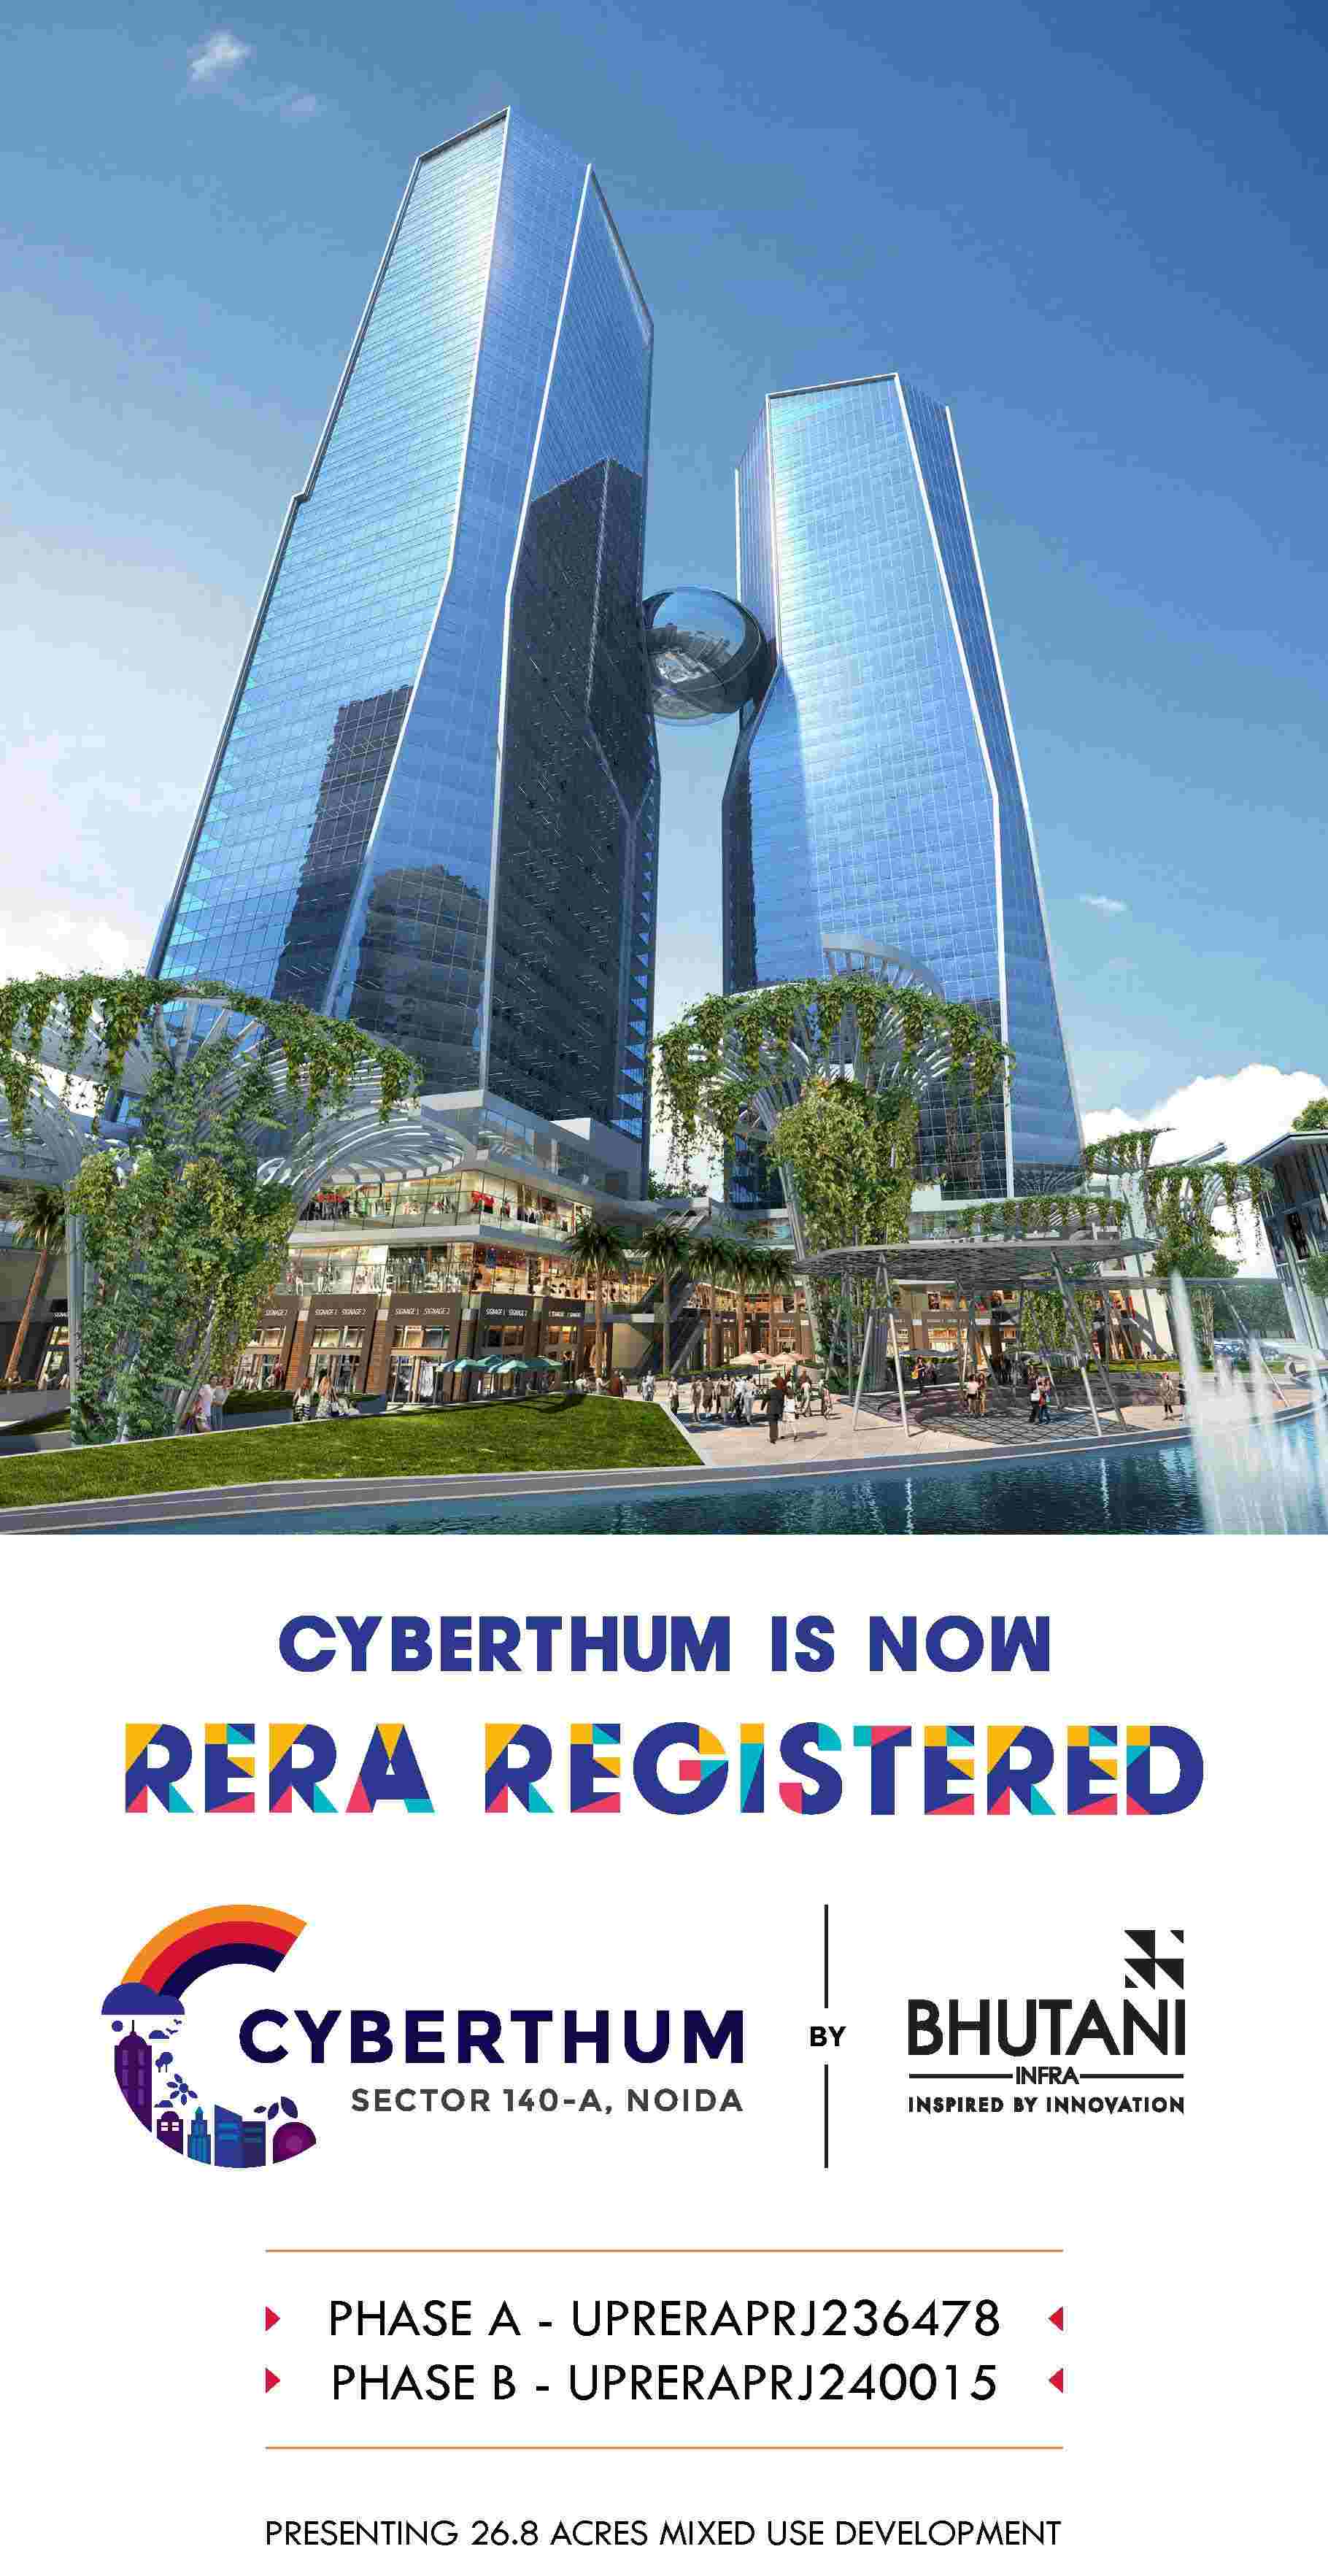 Bhutani Cyberthum is now RERA Registered, Noida Update